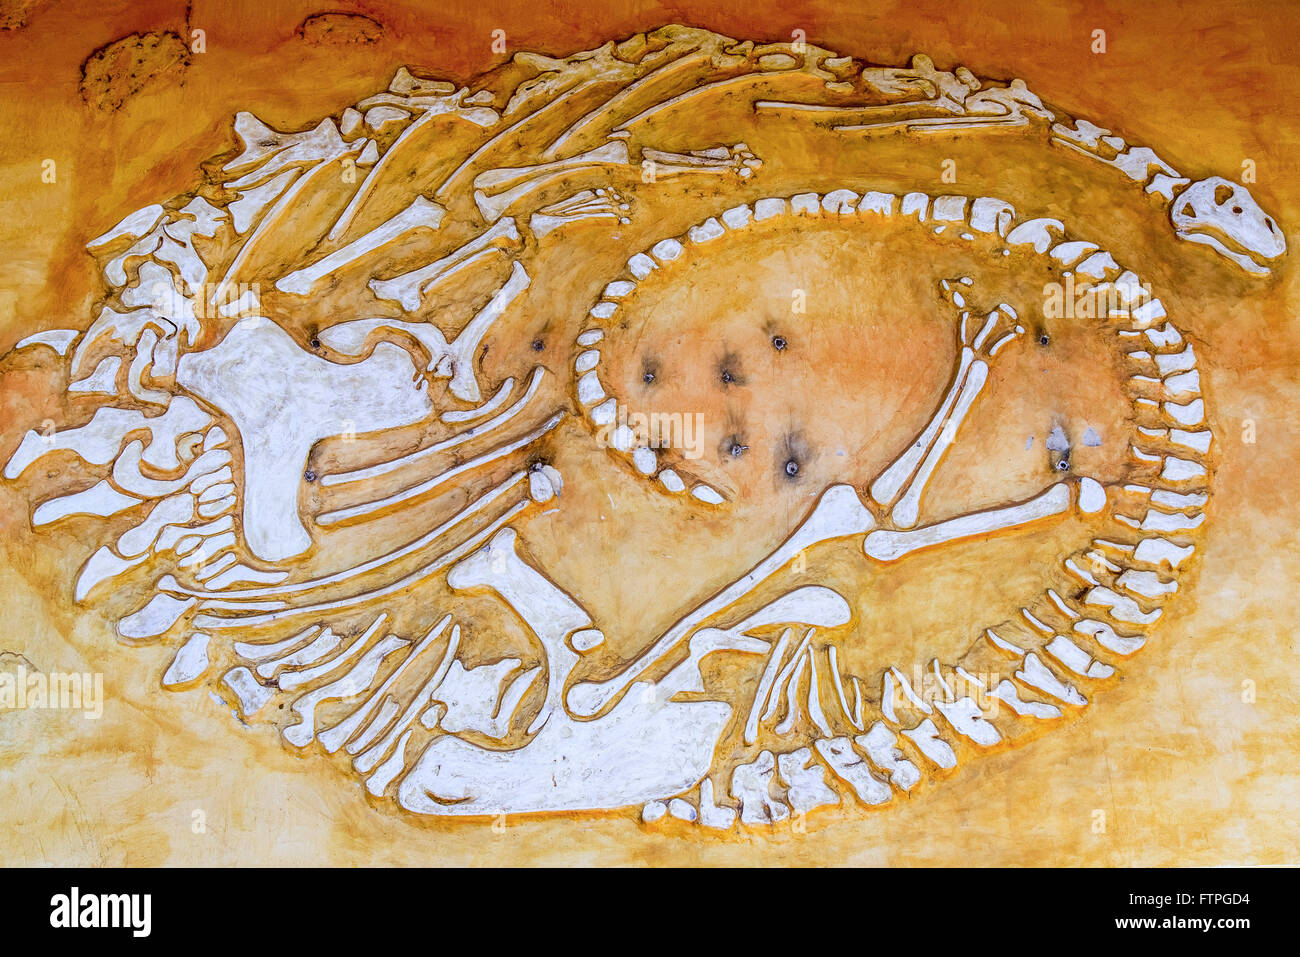 Darstellung der Knochen in Dinosaur Museum und Forschungszentrum paläontologischen Stockfoto